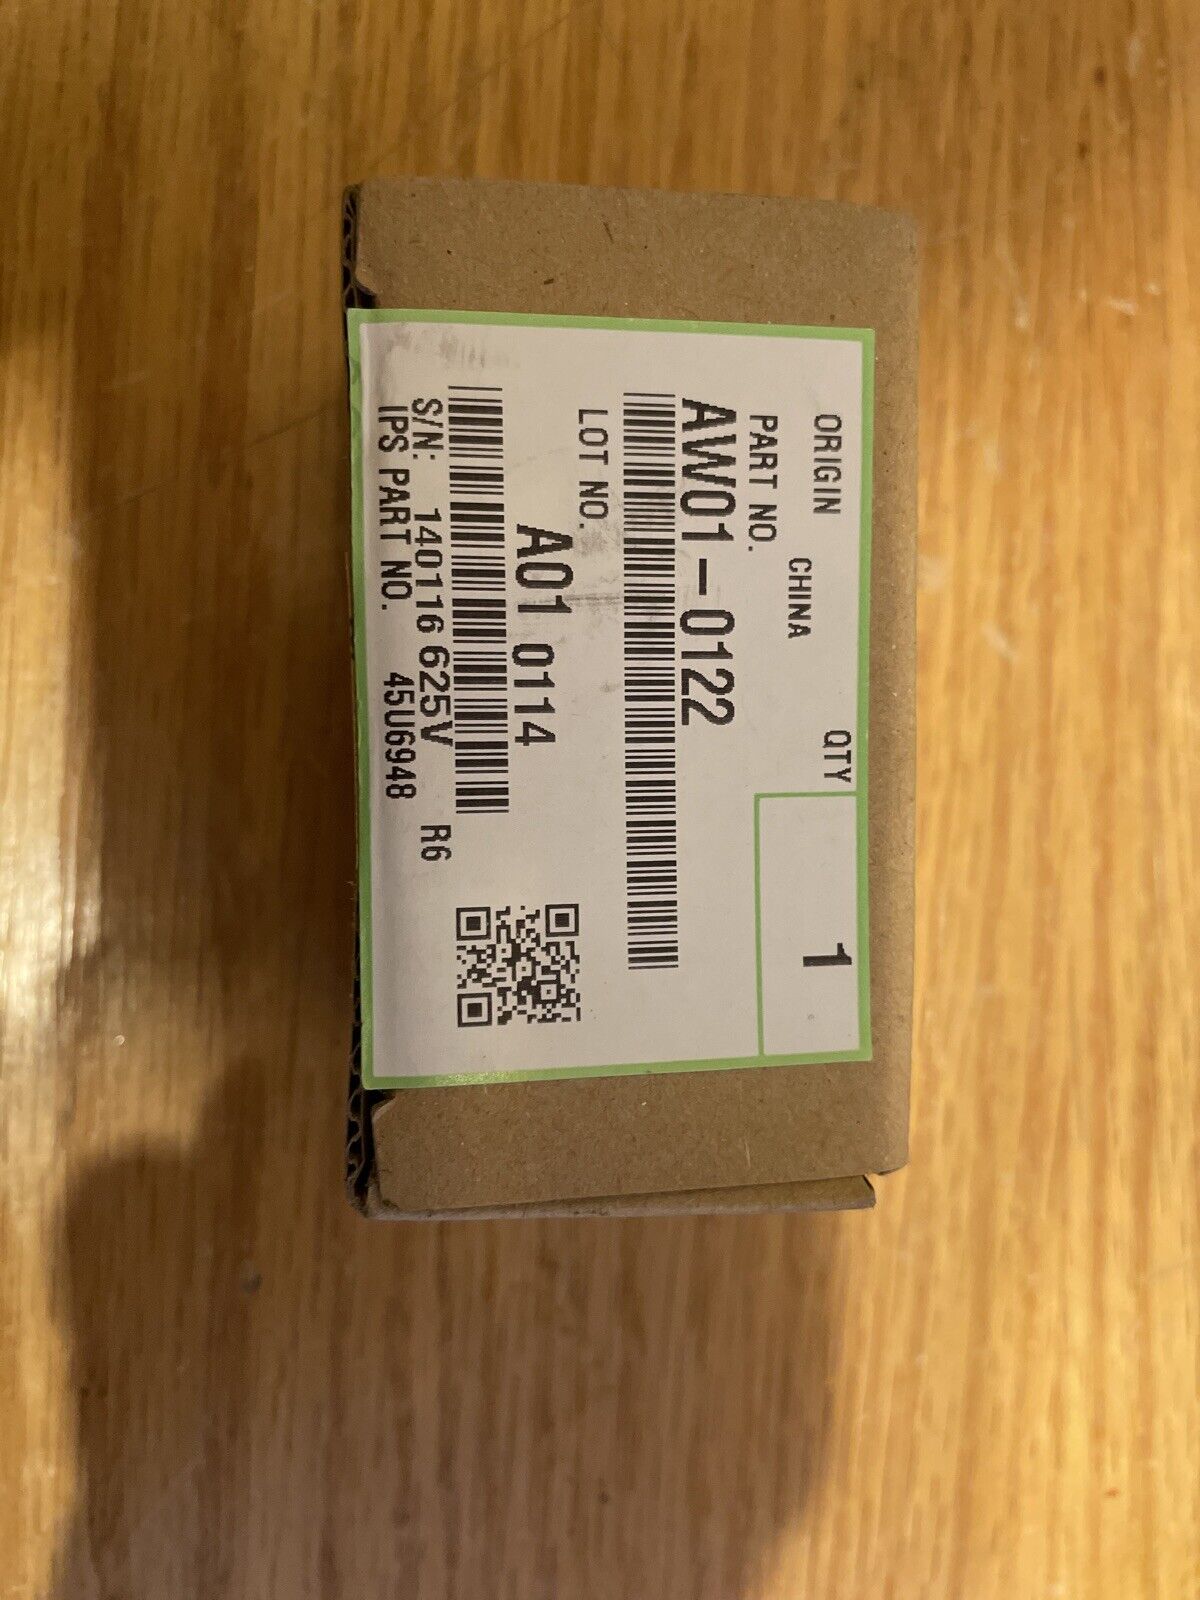 Genuine Ricoh Paper Feed Sensor, AW010122 AW01-0122, IPS Part No. 45U6948